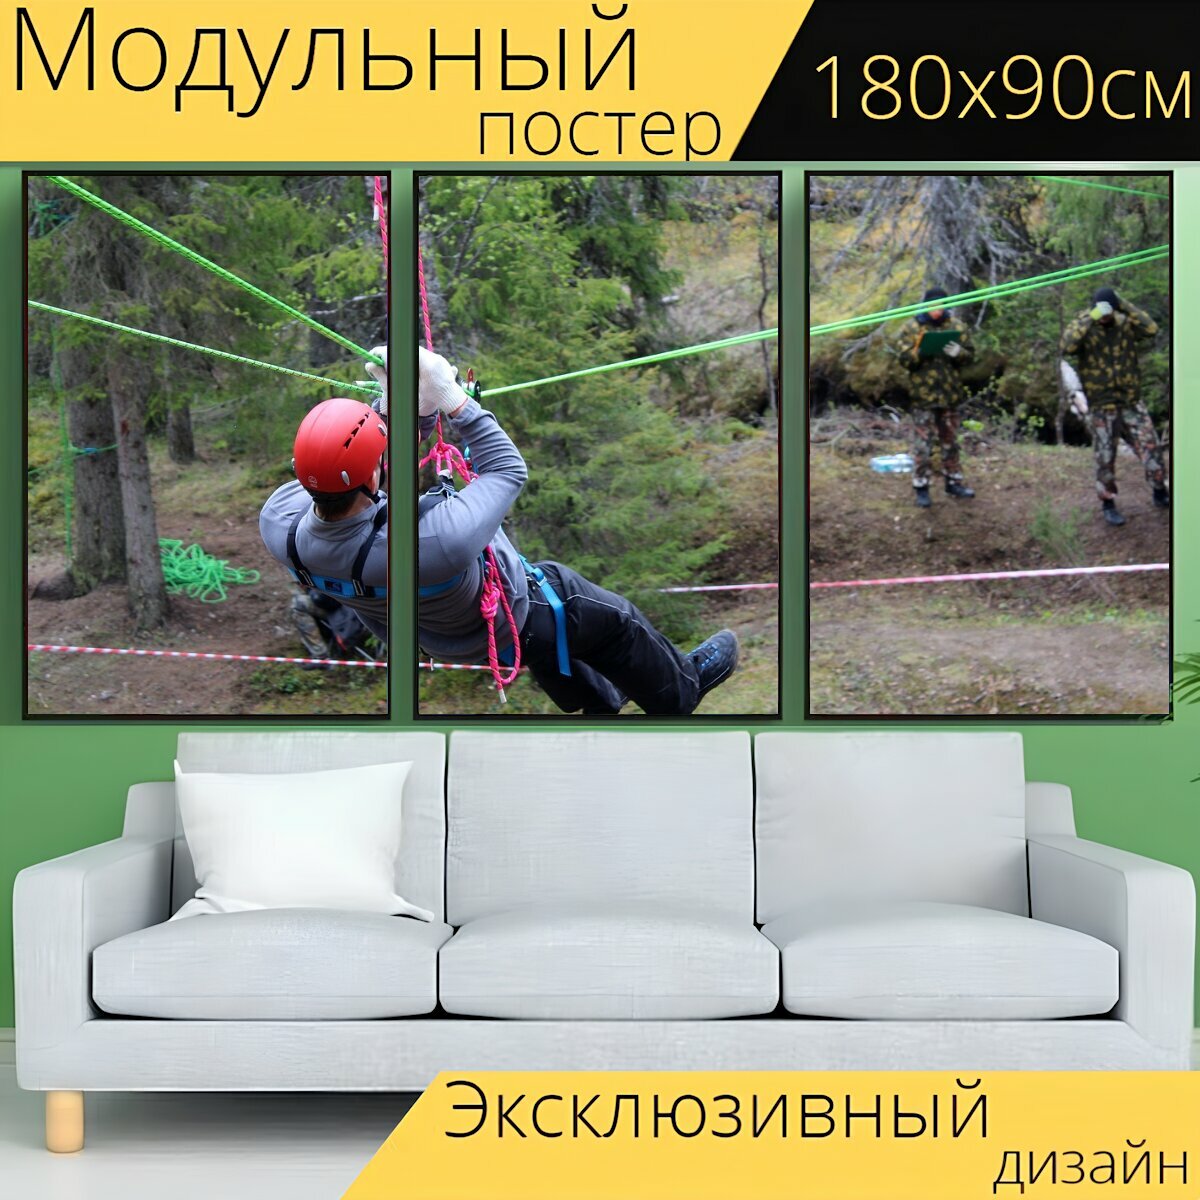 Модульный постер "Альпинизм, скалолаз, веревка" 180 x 90 см. для интерьера